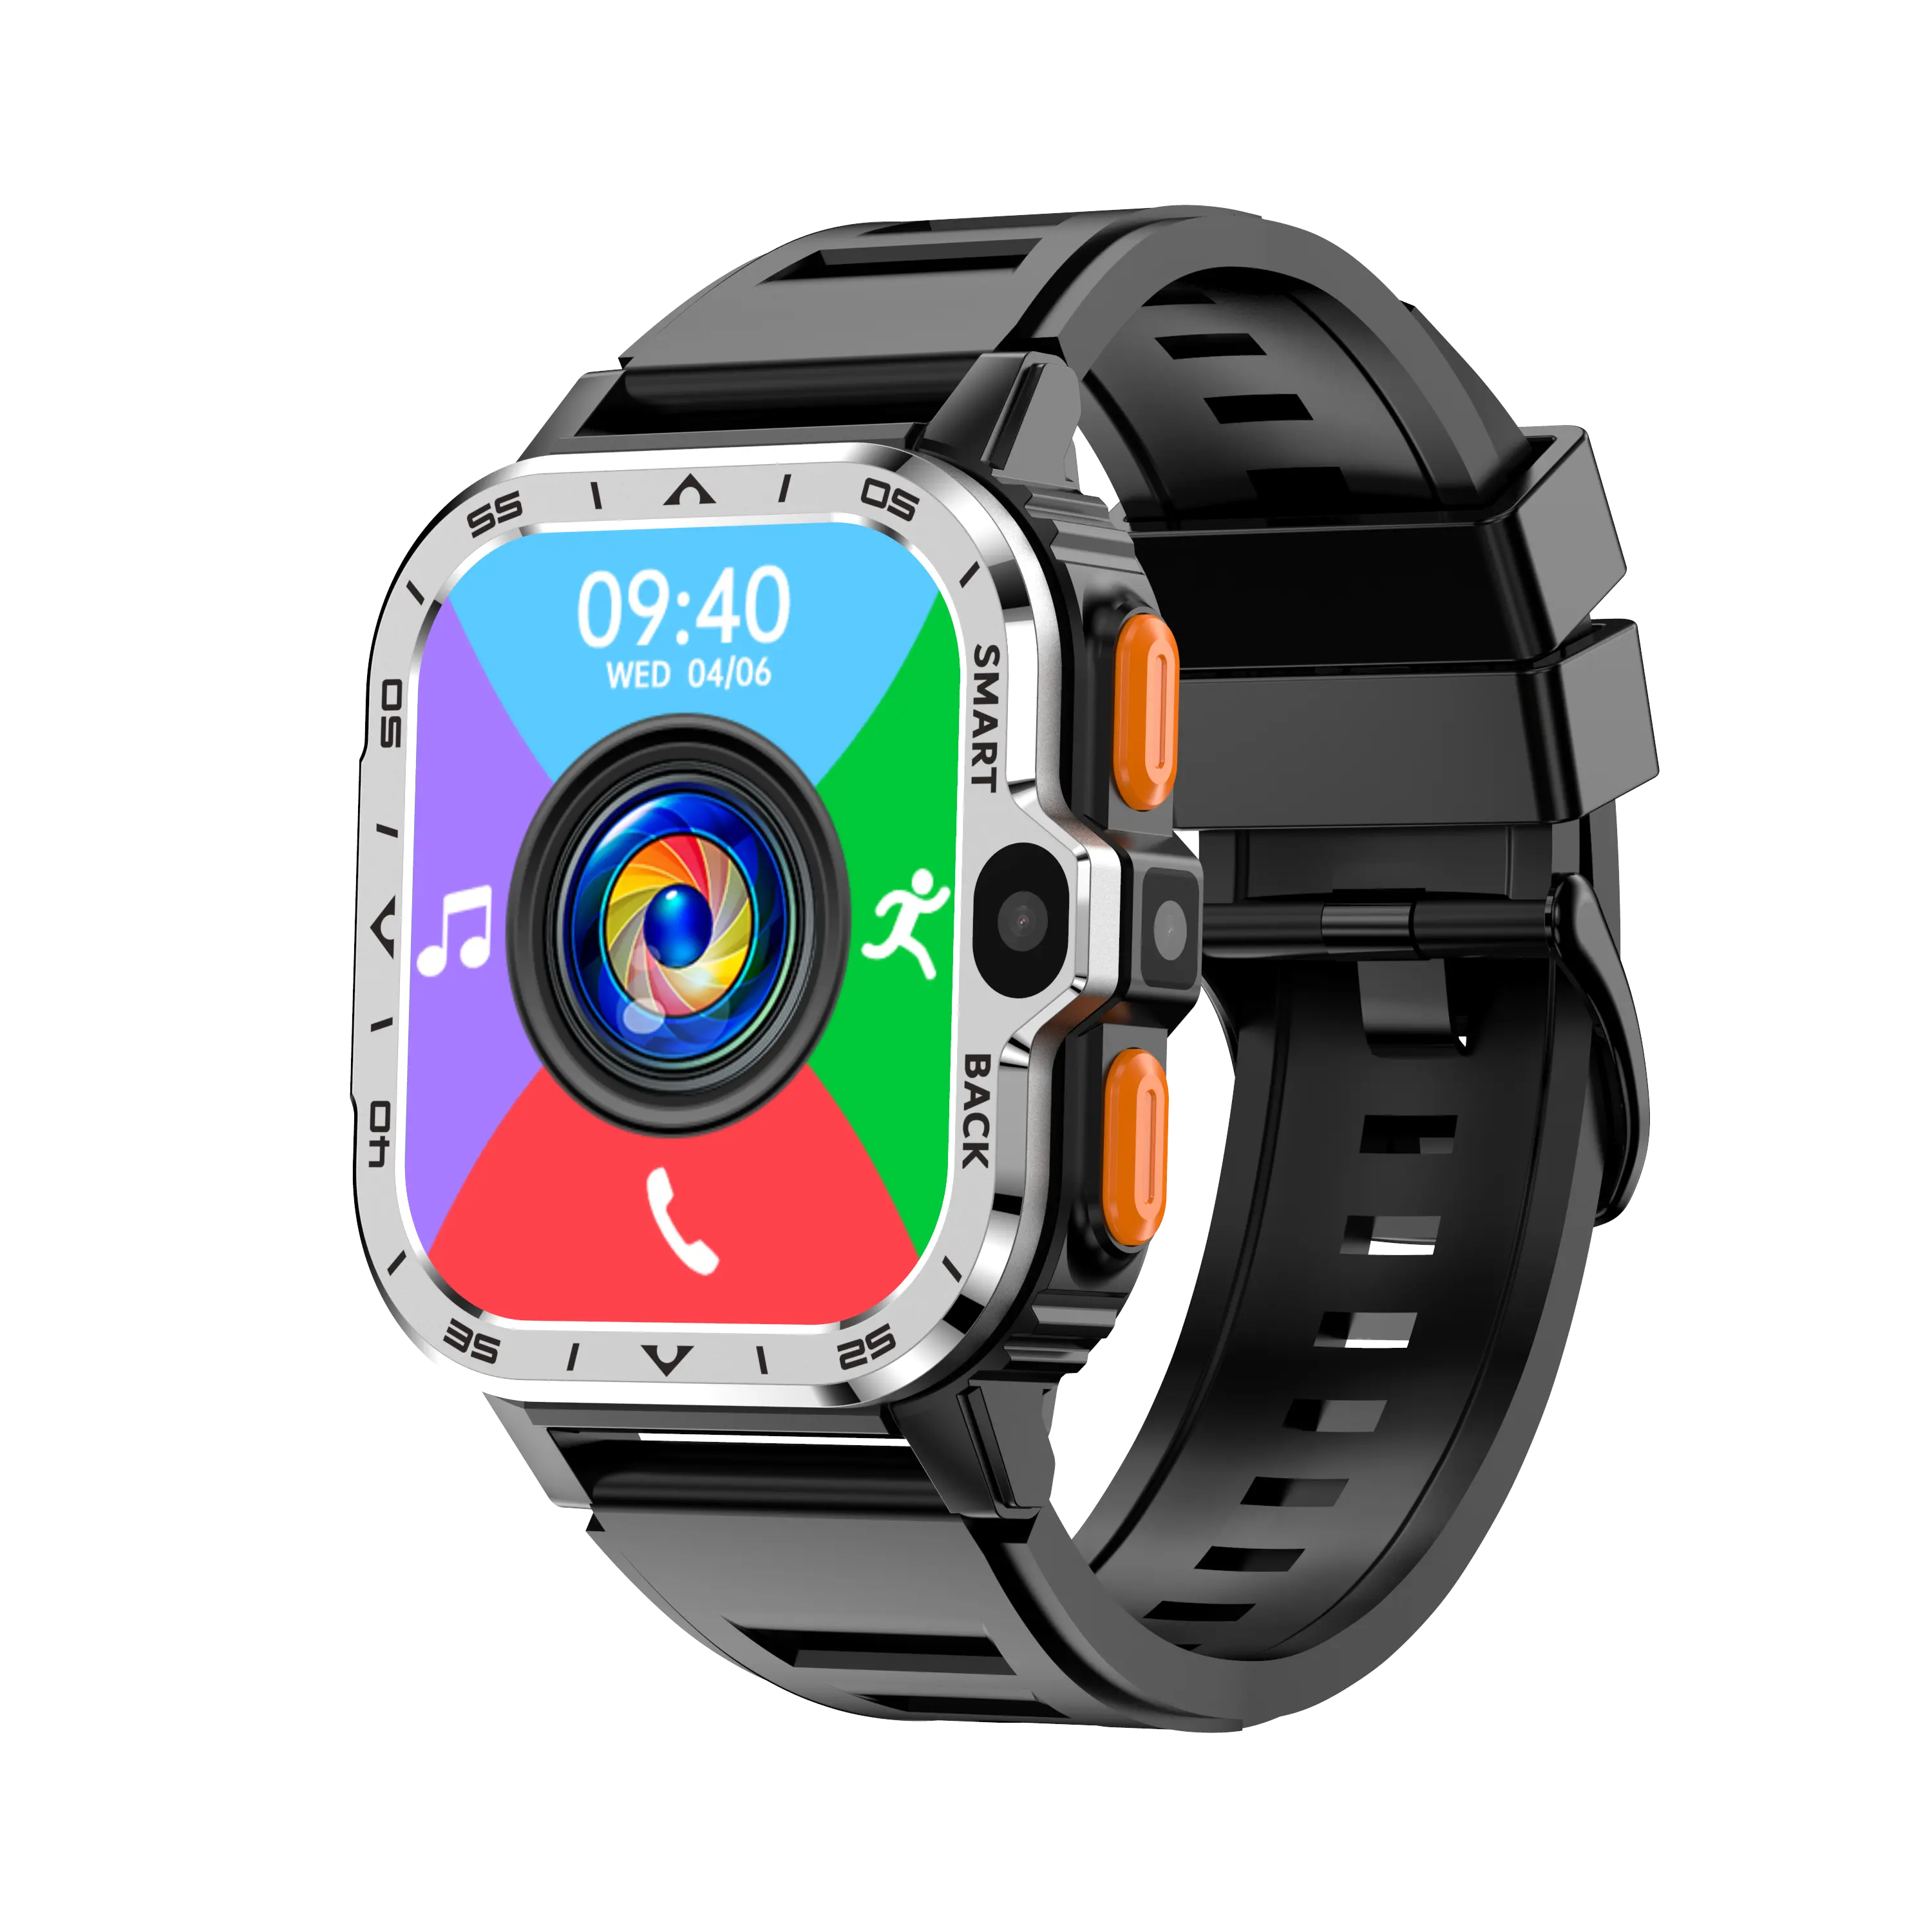 Smochm Android 2G+16G HD Rückfahrkamera Smart Watch GPS APP Herunterladen 4G Netzwerk 700 mAh Akku Play Store Google Push-Nachricht